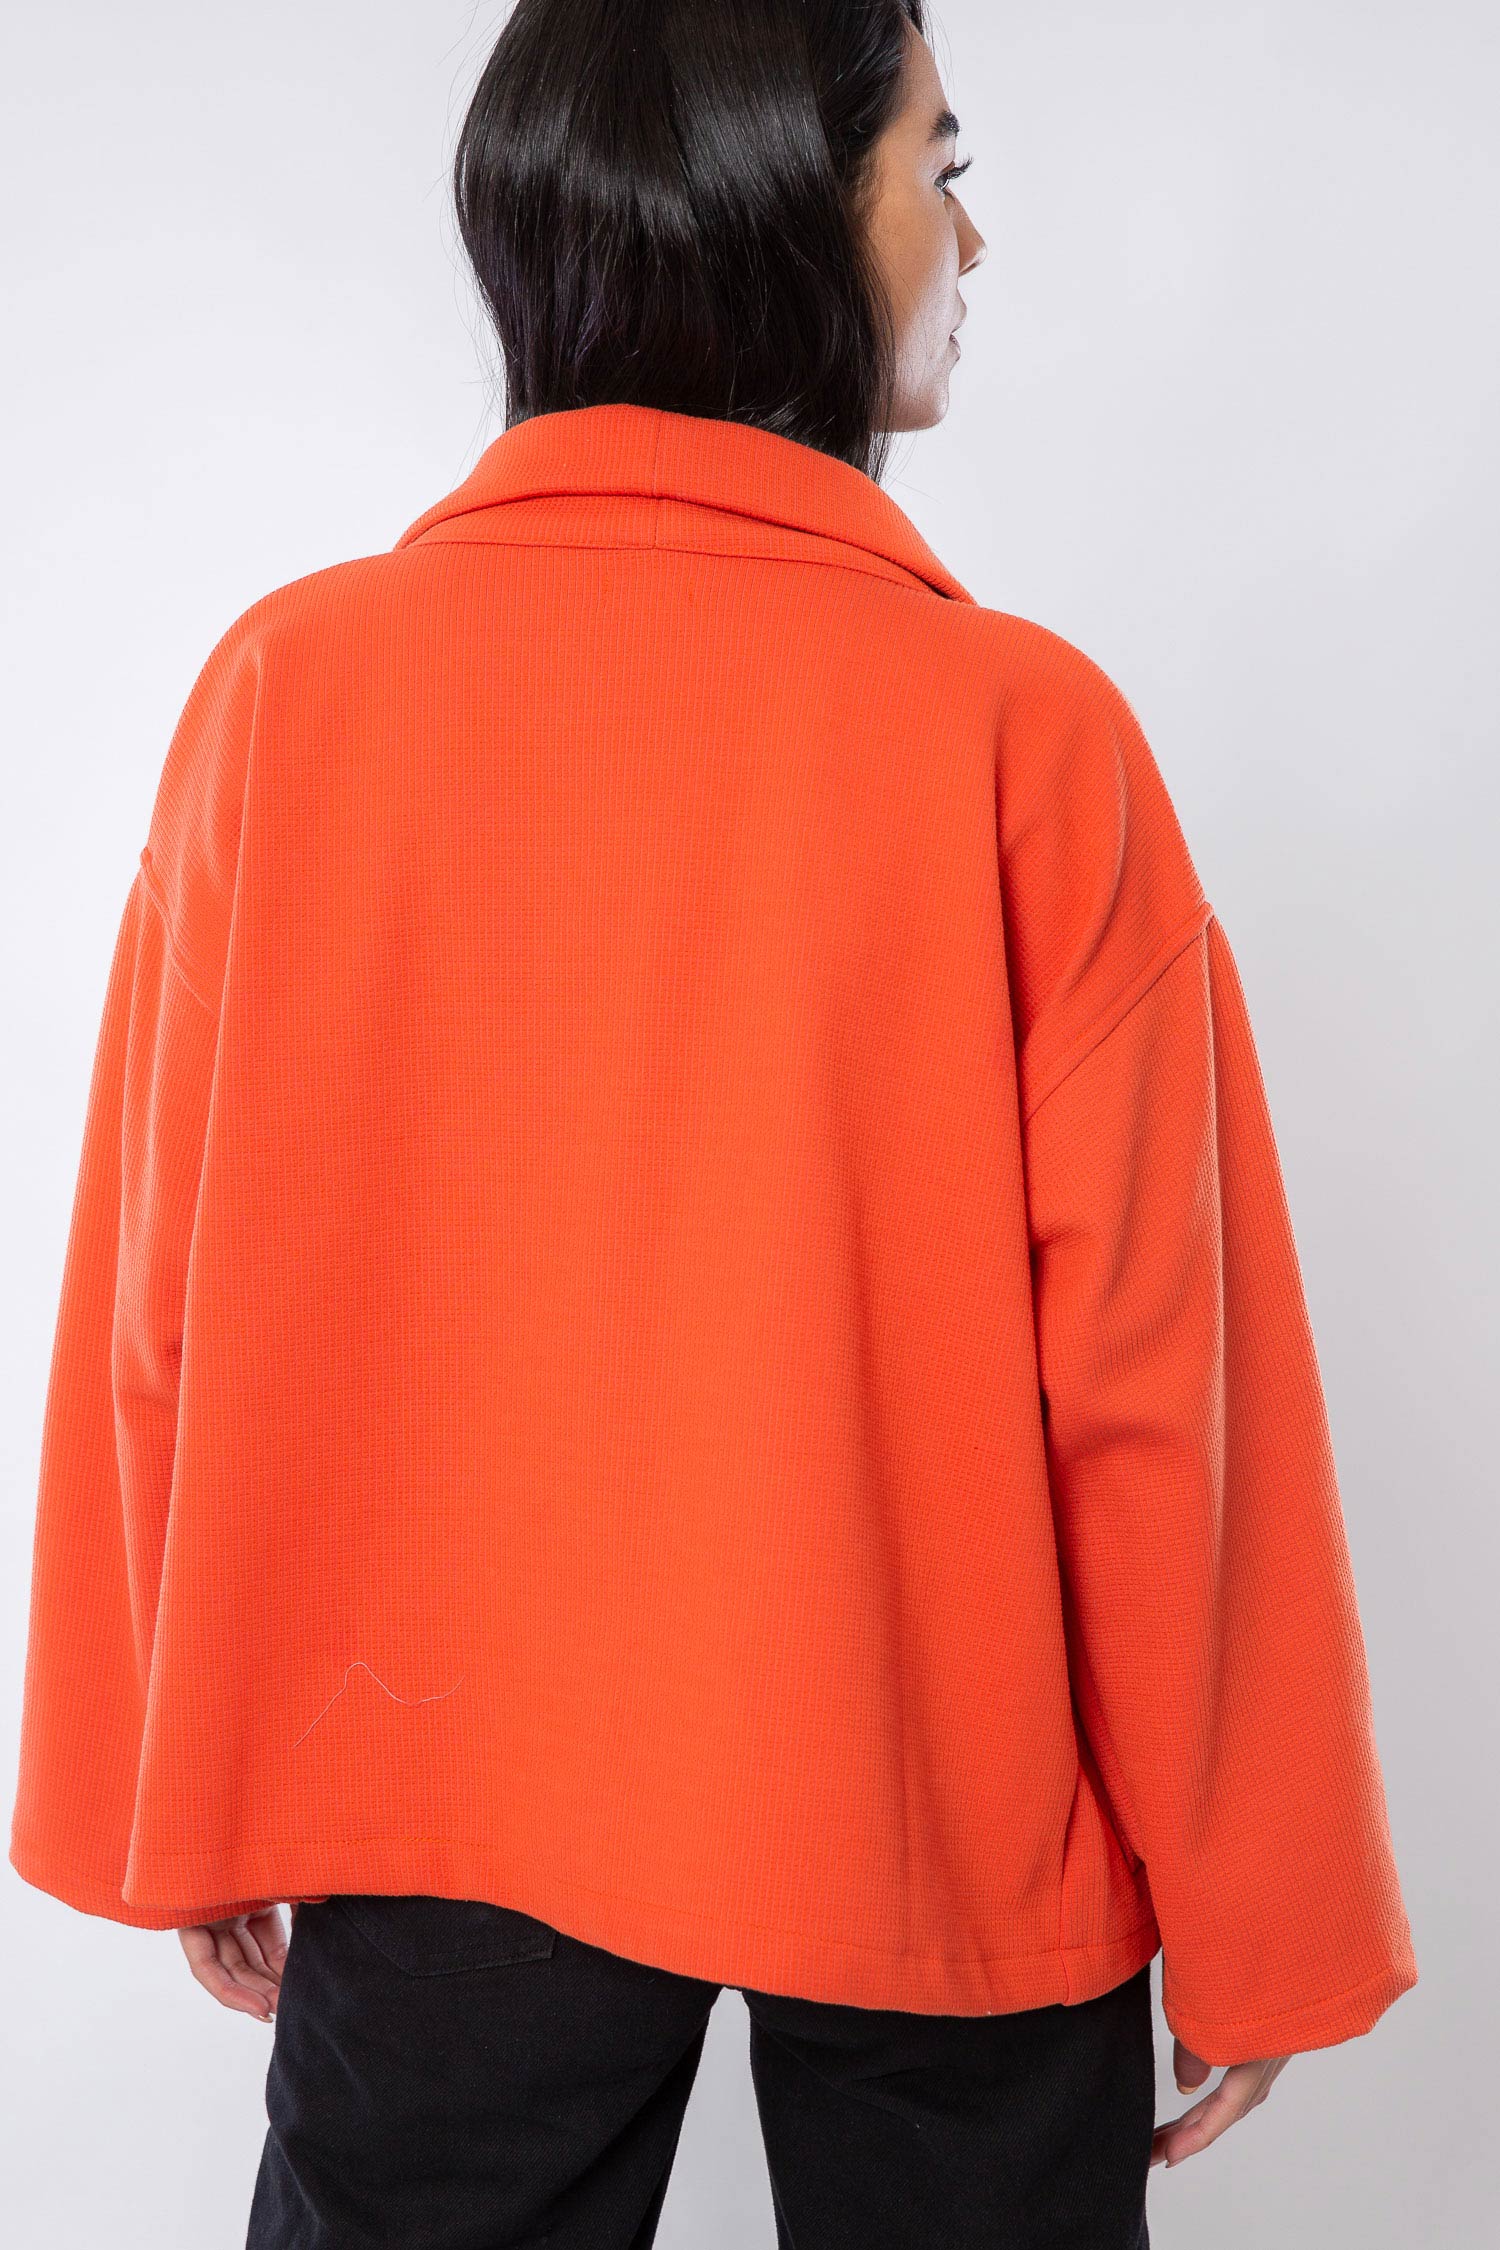 Orange Winter Jacket